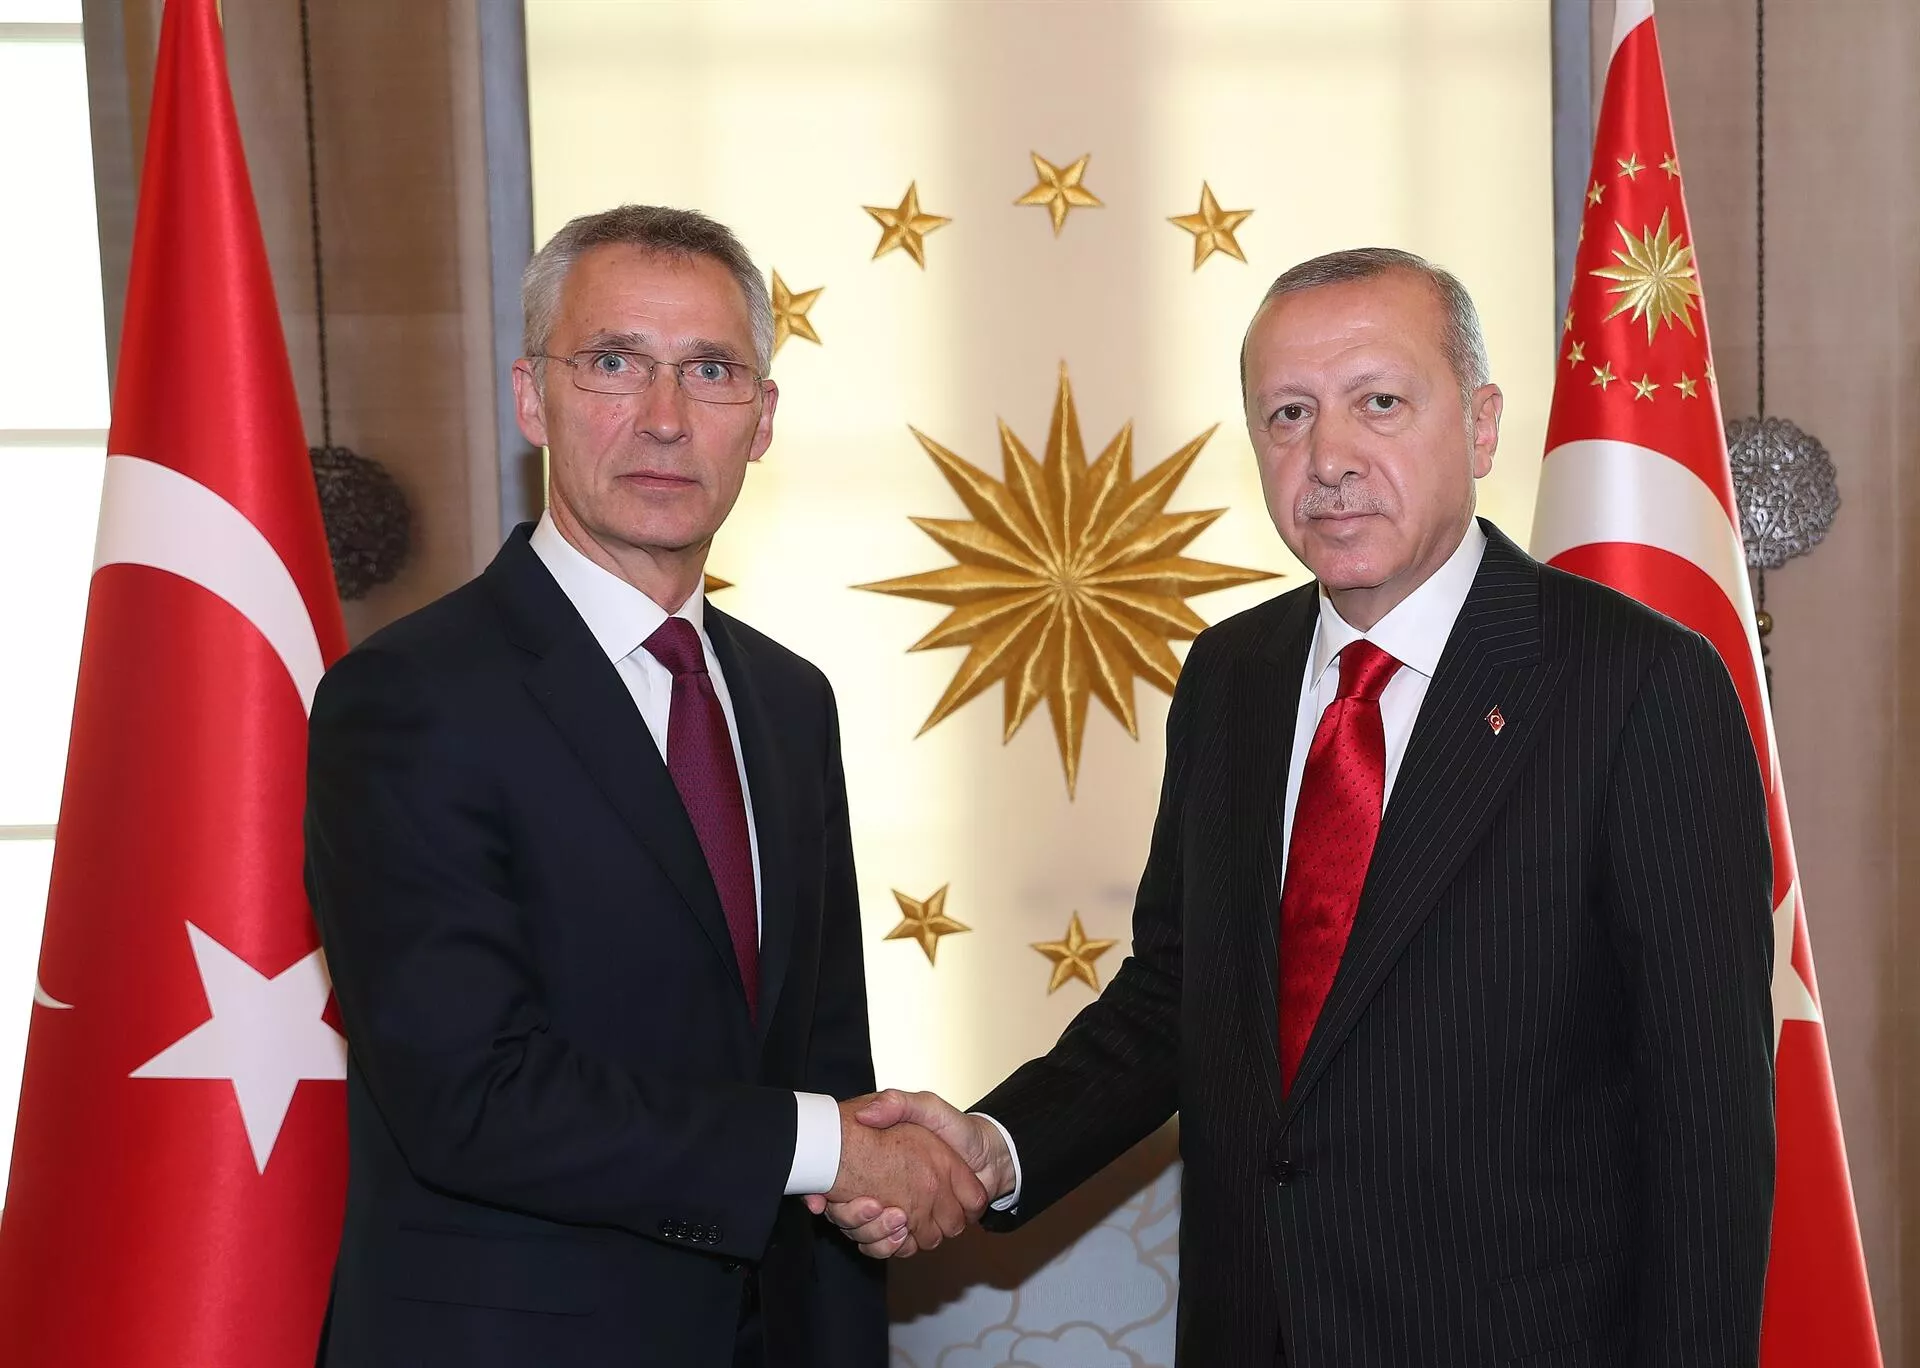 Son dakika | Cumhurbaşkanı Erdoğan, NATO Genel Sekreteri Jens Stoltenberg ile görüştü! Yazılı taahhüt verilmeden süreçte ilerleme sağlanamaz